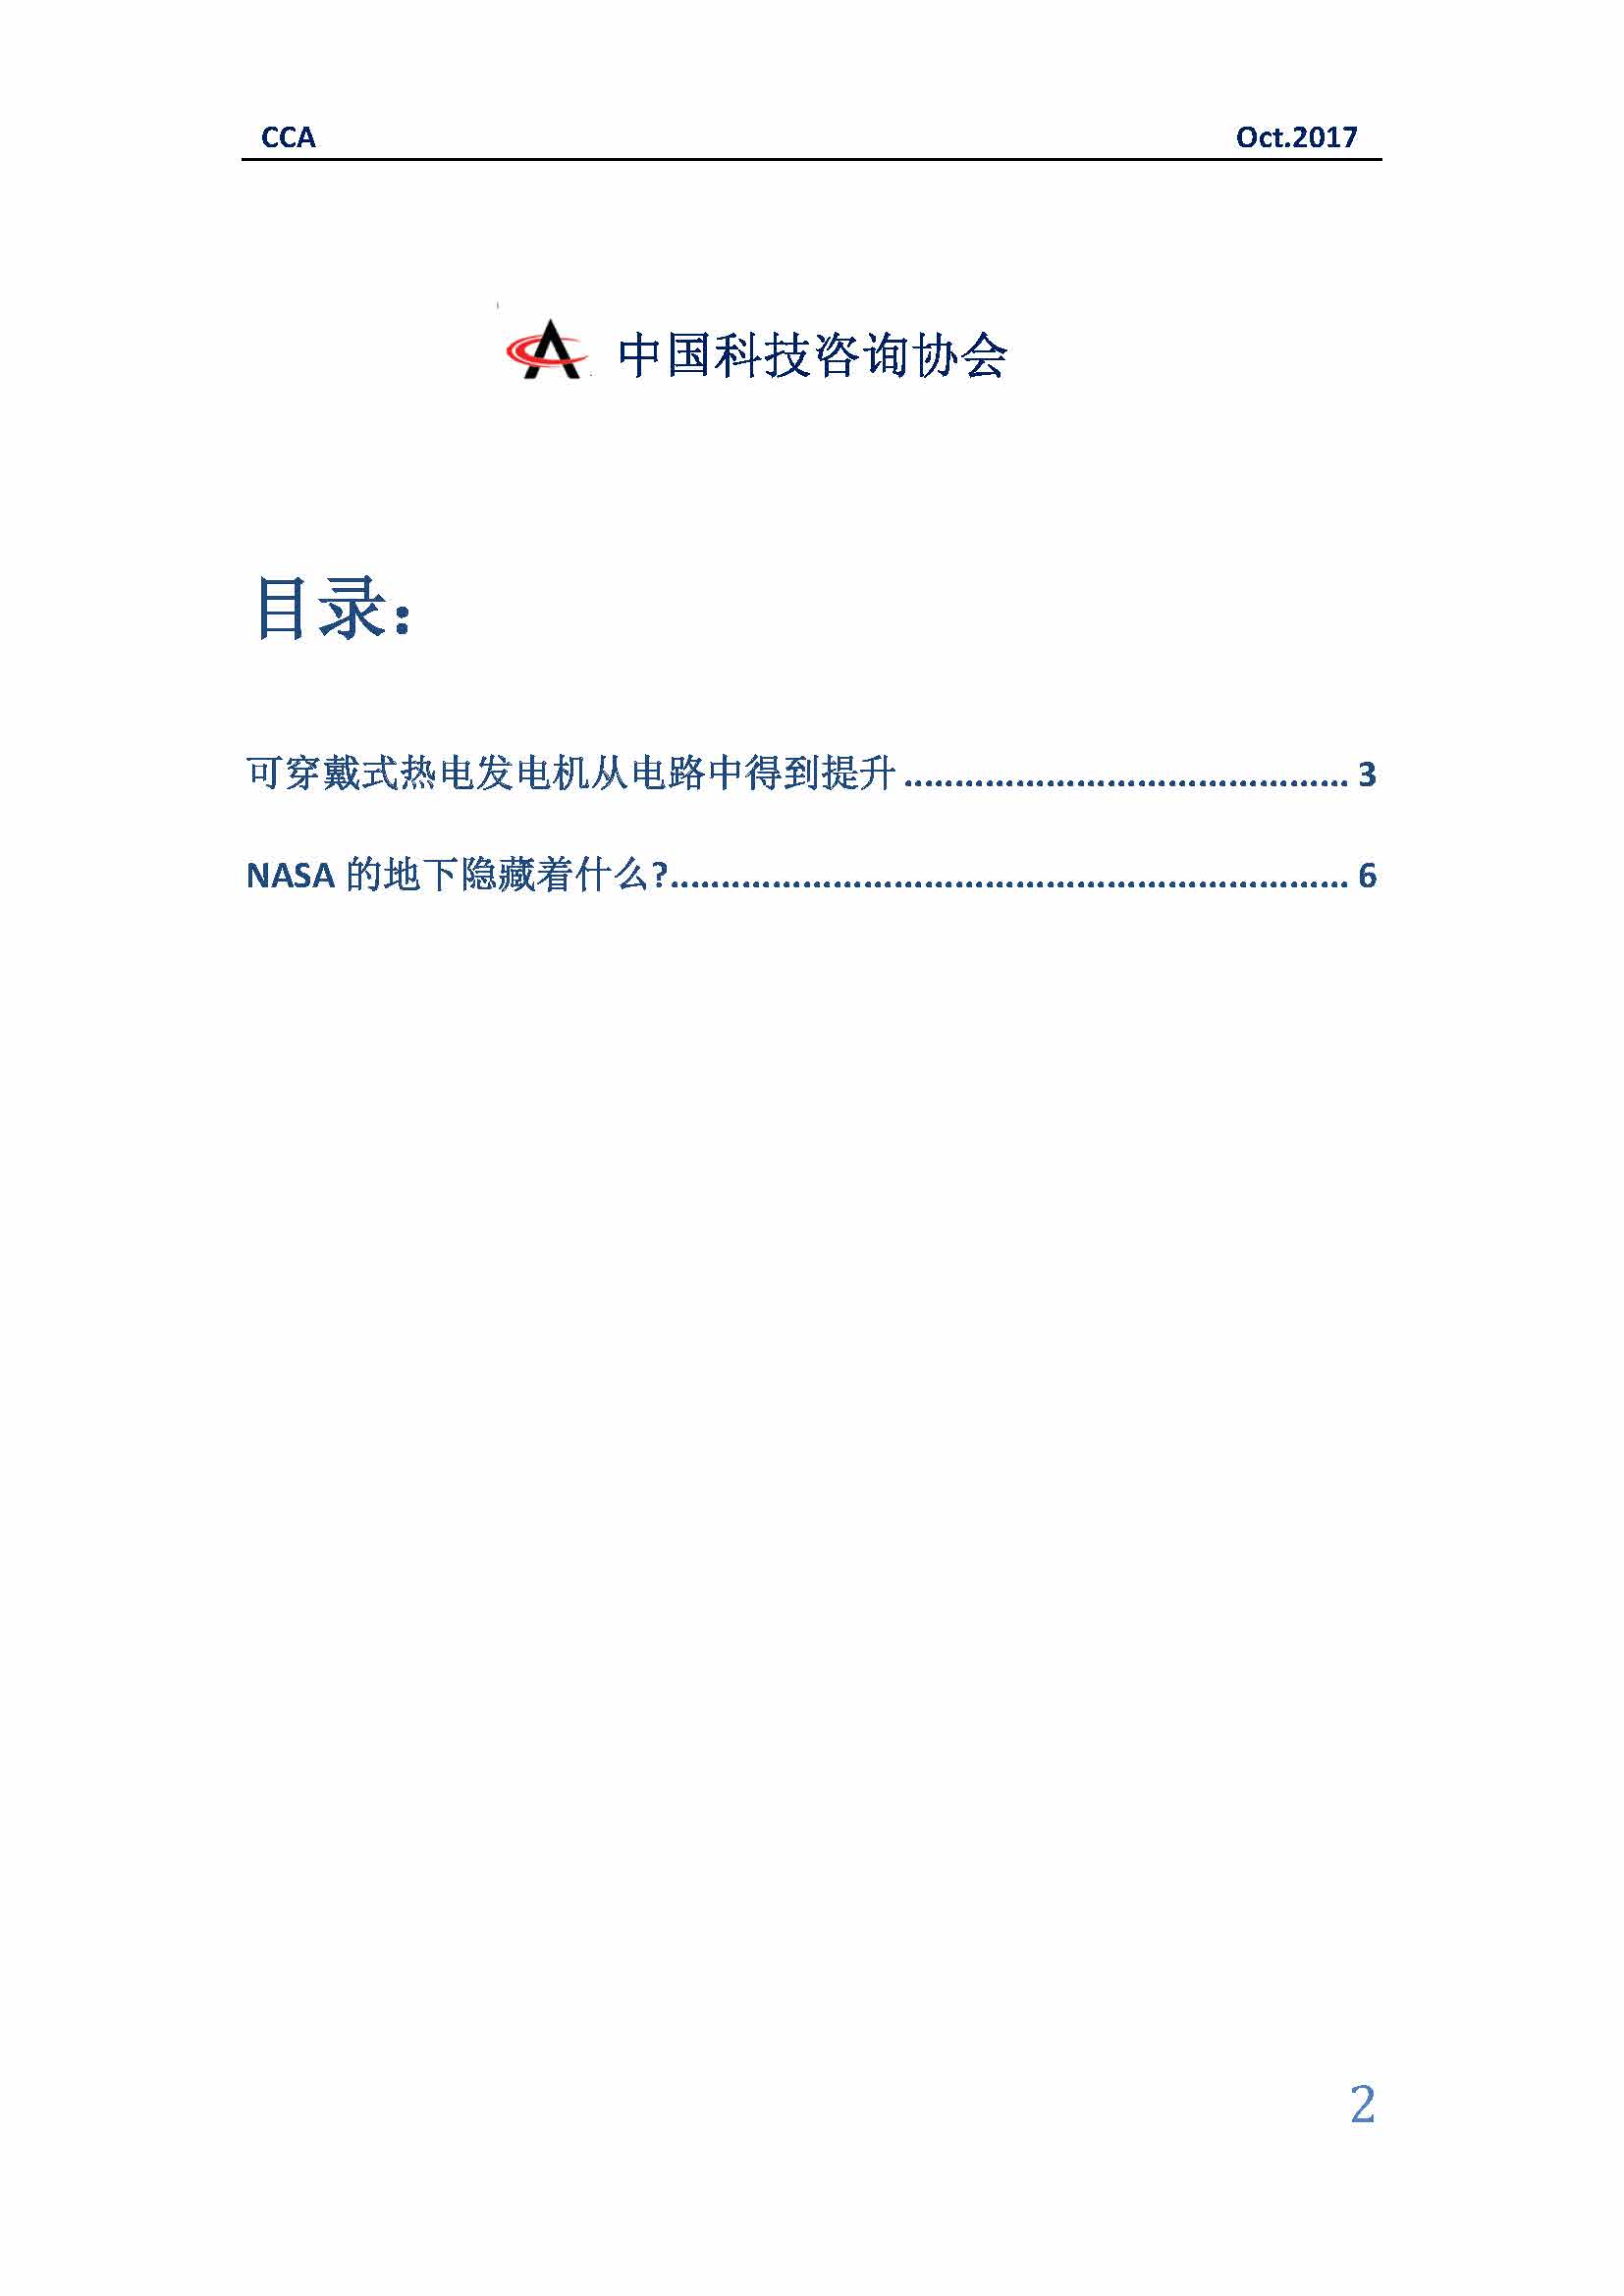 中国科技咨询协会国际快讯（第三十期）_页面_02.jpg